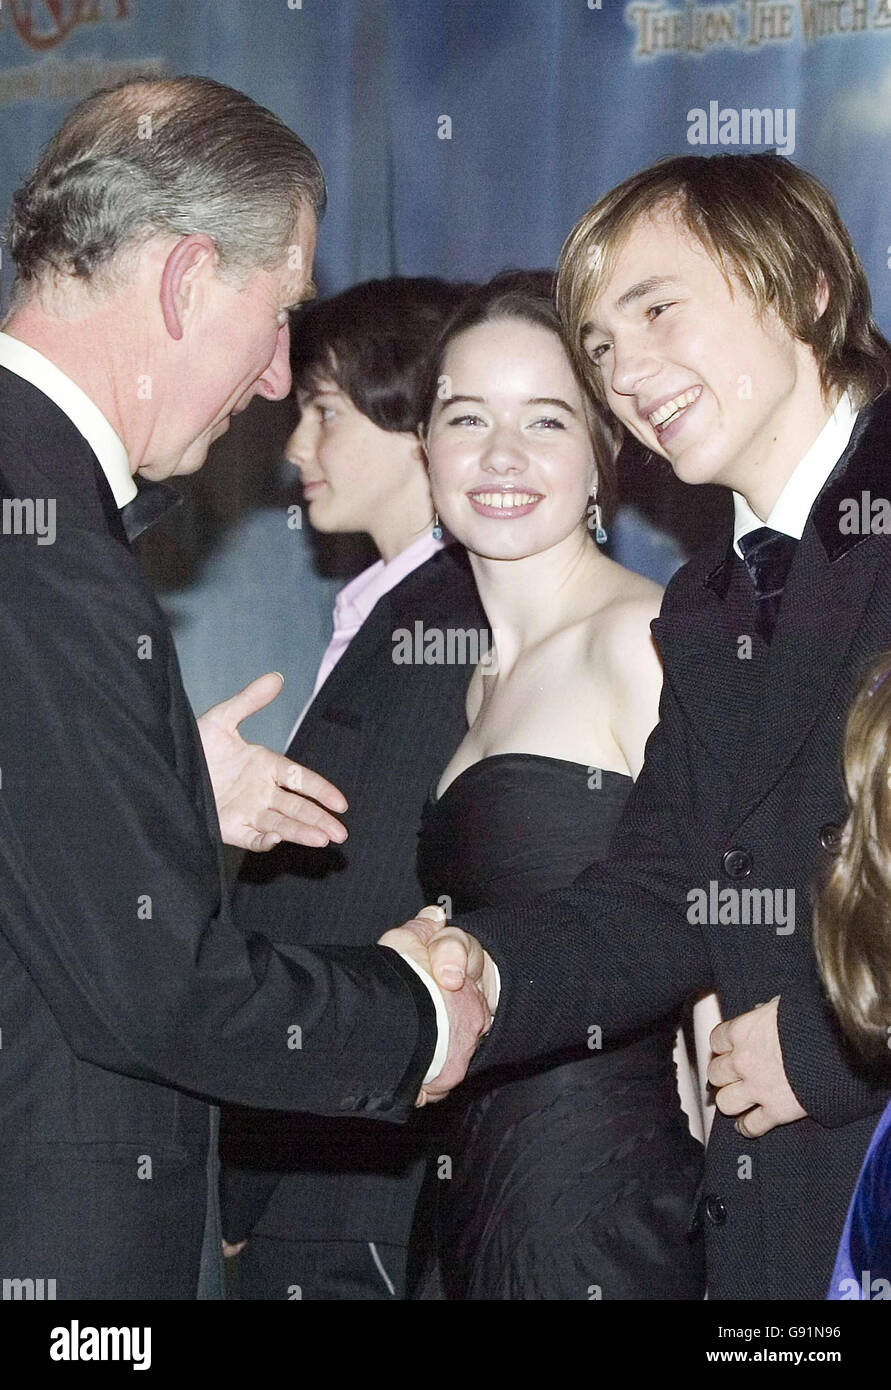 El Príncipe de Gales se reúne con Anna Popplewell y William Moseley, dos de las estrellas de la película 'las Crónicas de Narnia' en su estreno mundial en el Royal Albert Hall, Londres, miércoles 7 de diciembre de 2005. El crédito de la foto debe decir: Leon Neal/AFP pool/PA. Foto de stock